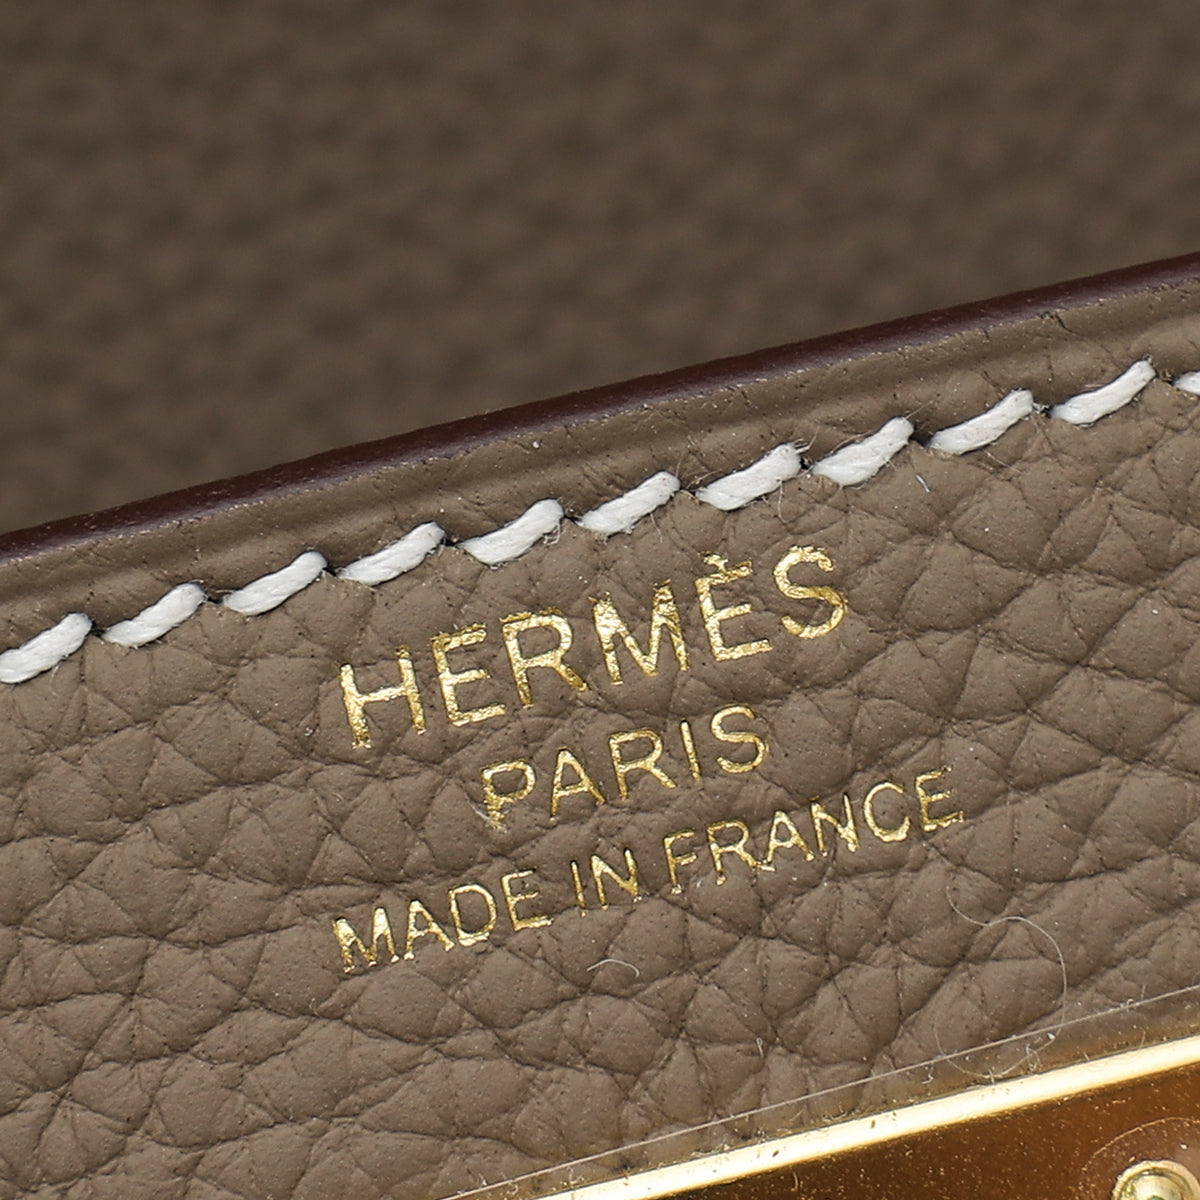 Hermès Etoupe Retourne Kelly 28cm of Togo Leather with